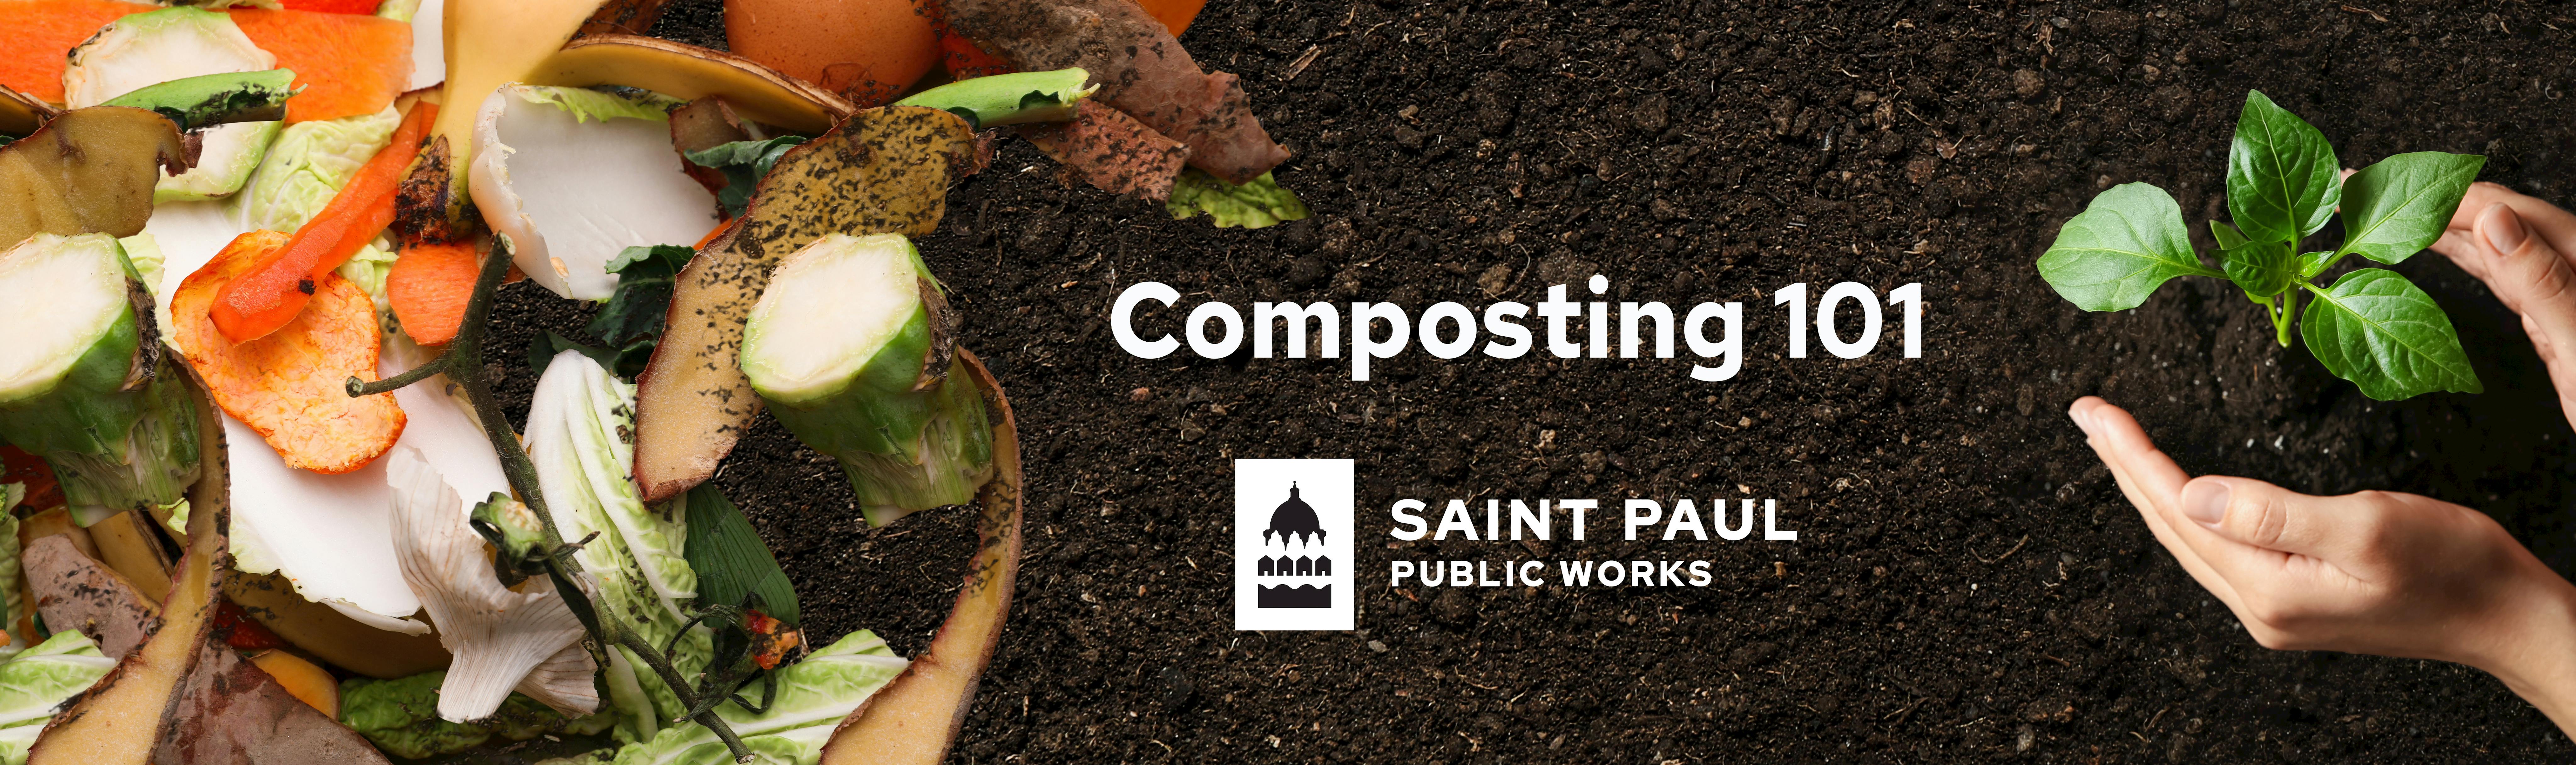 Composting 101, Environmental Center